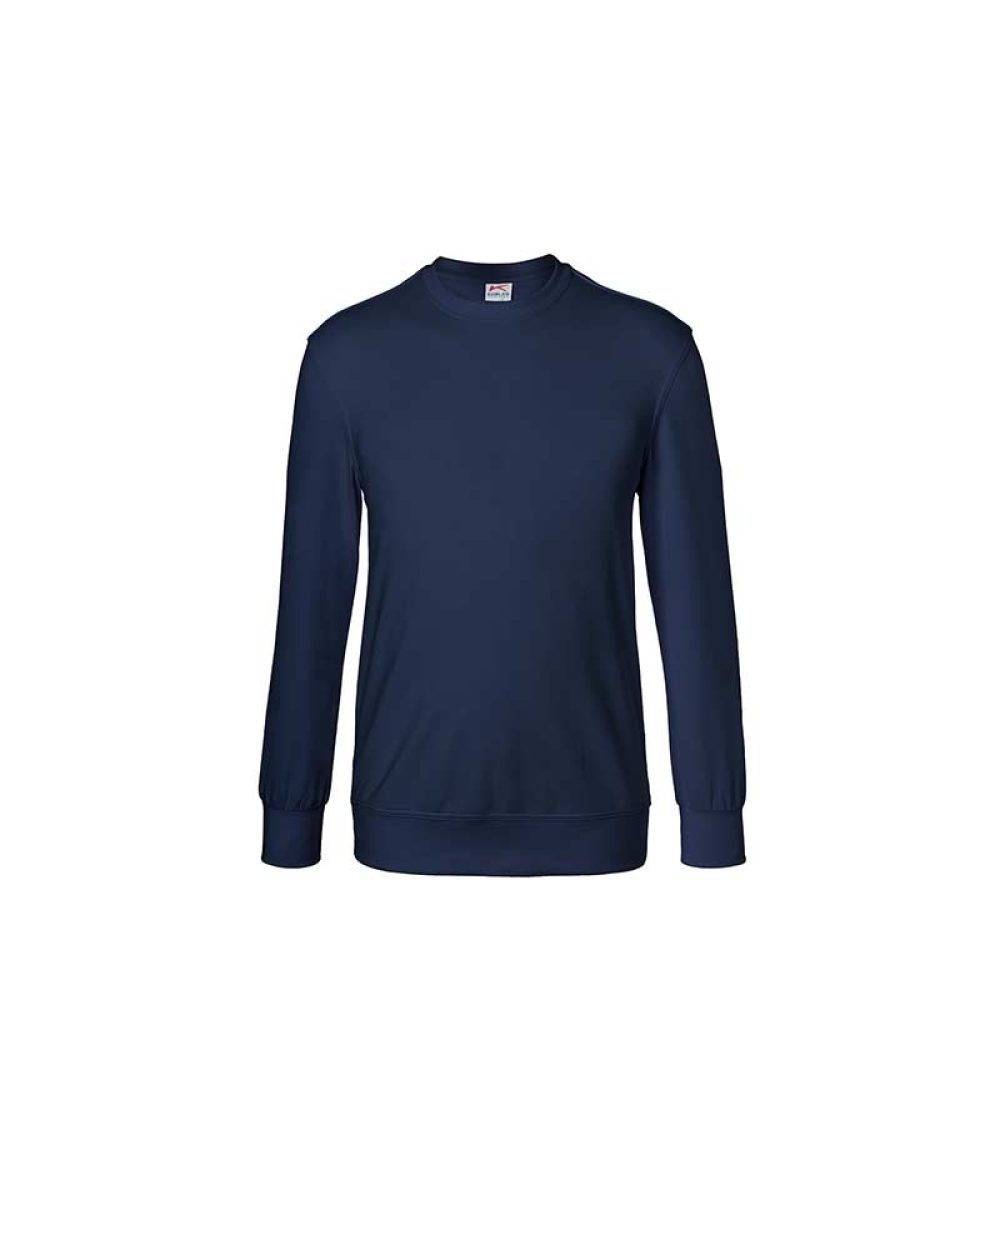 kuebler-sweatshirt-shirts-5023-6330-48